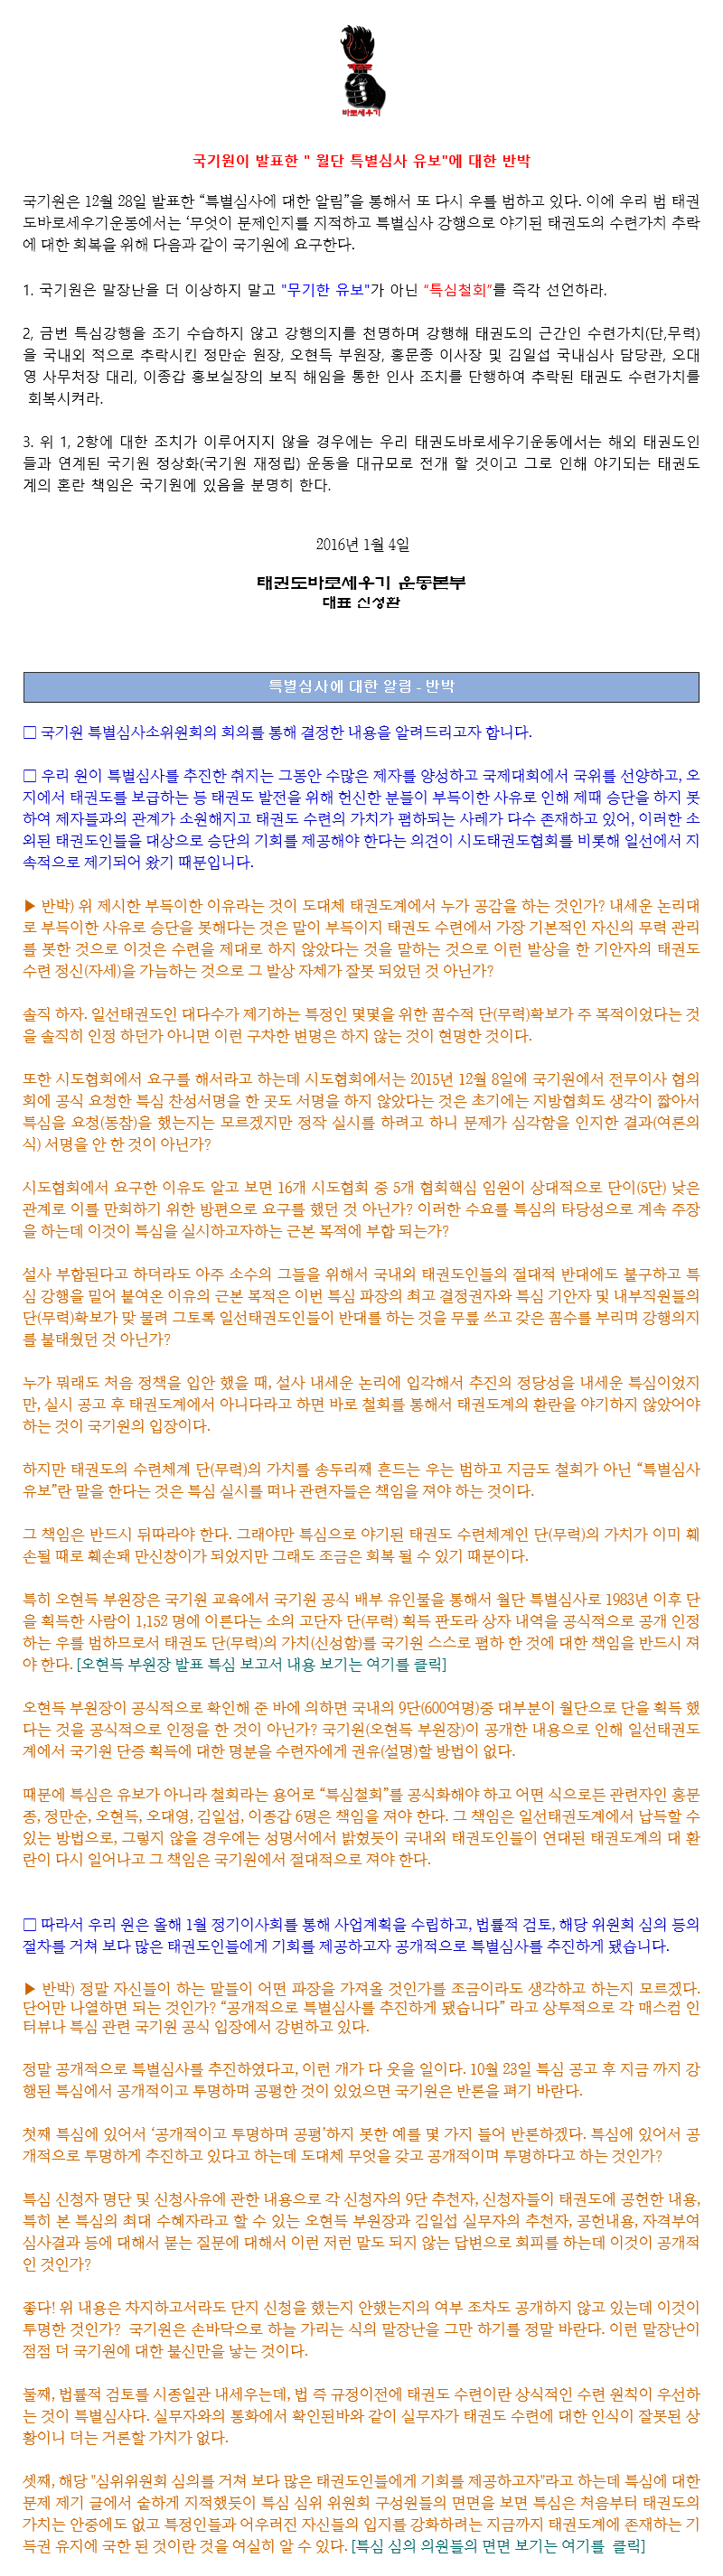 20160103_특별심사유보반박_01.gif